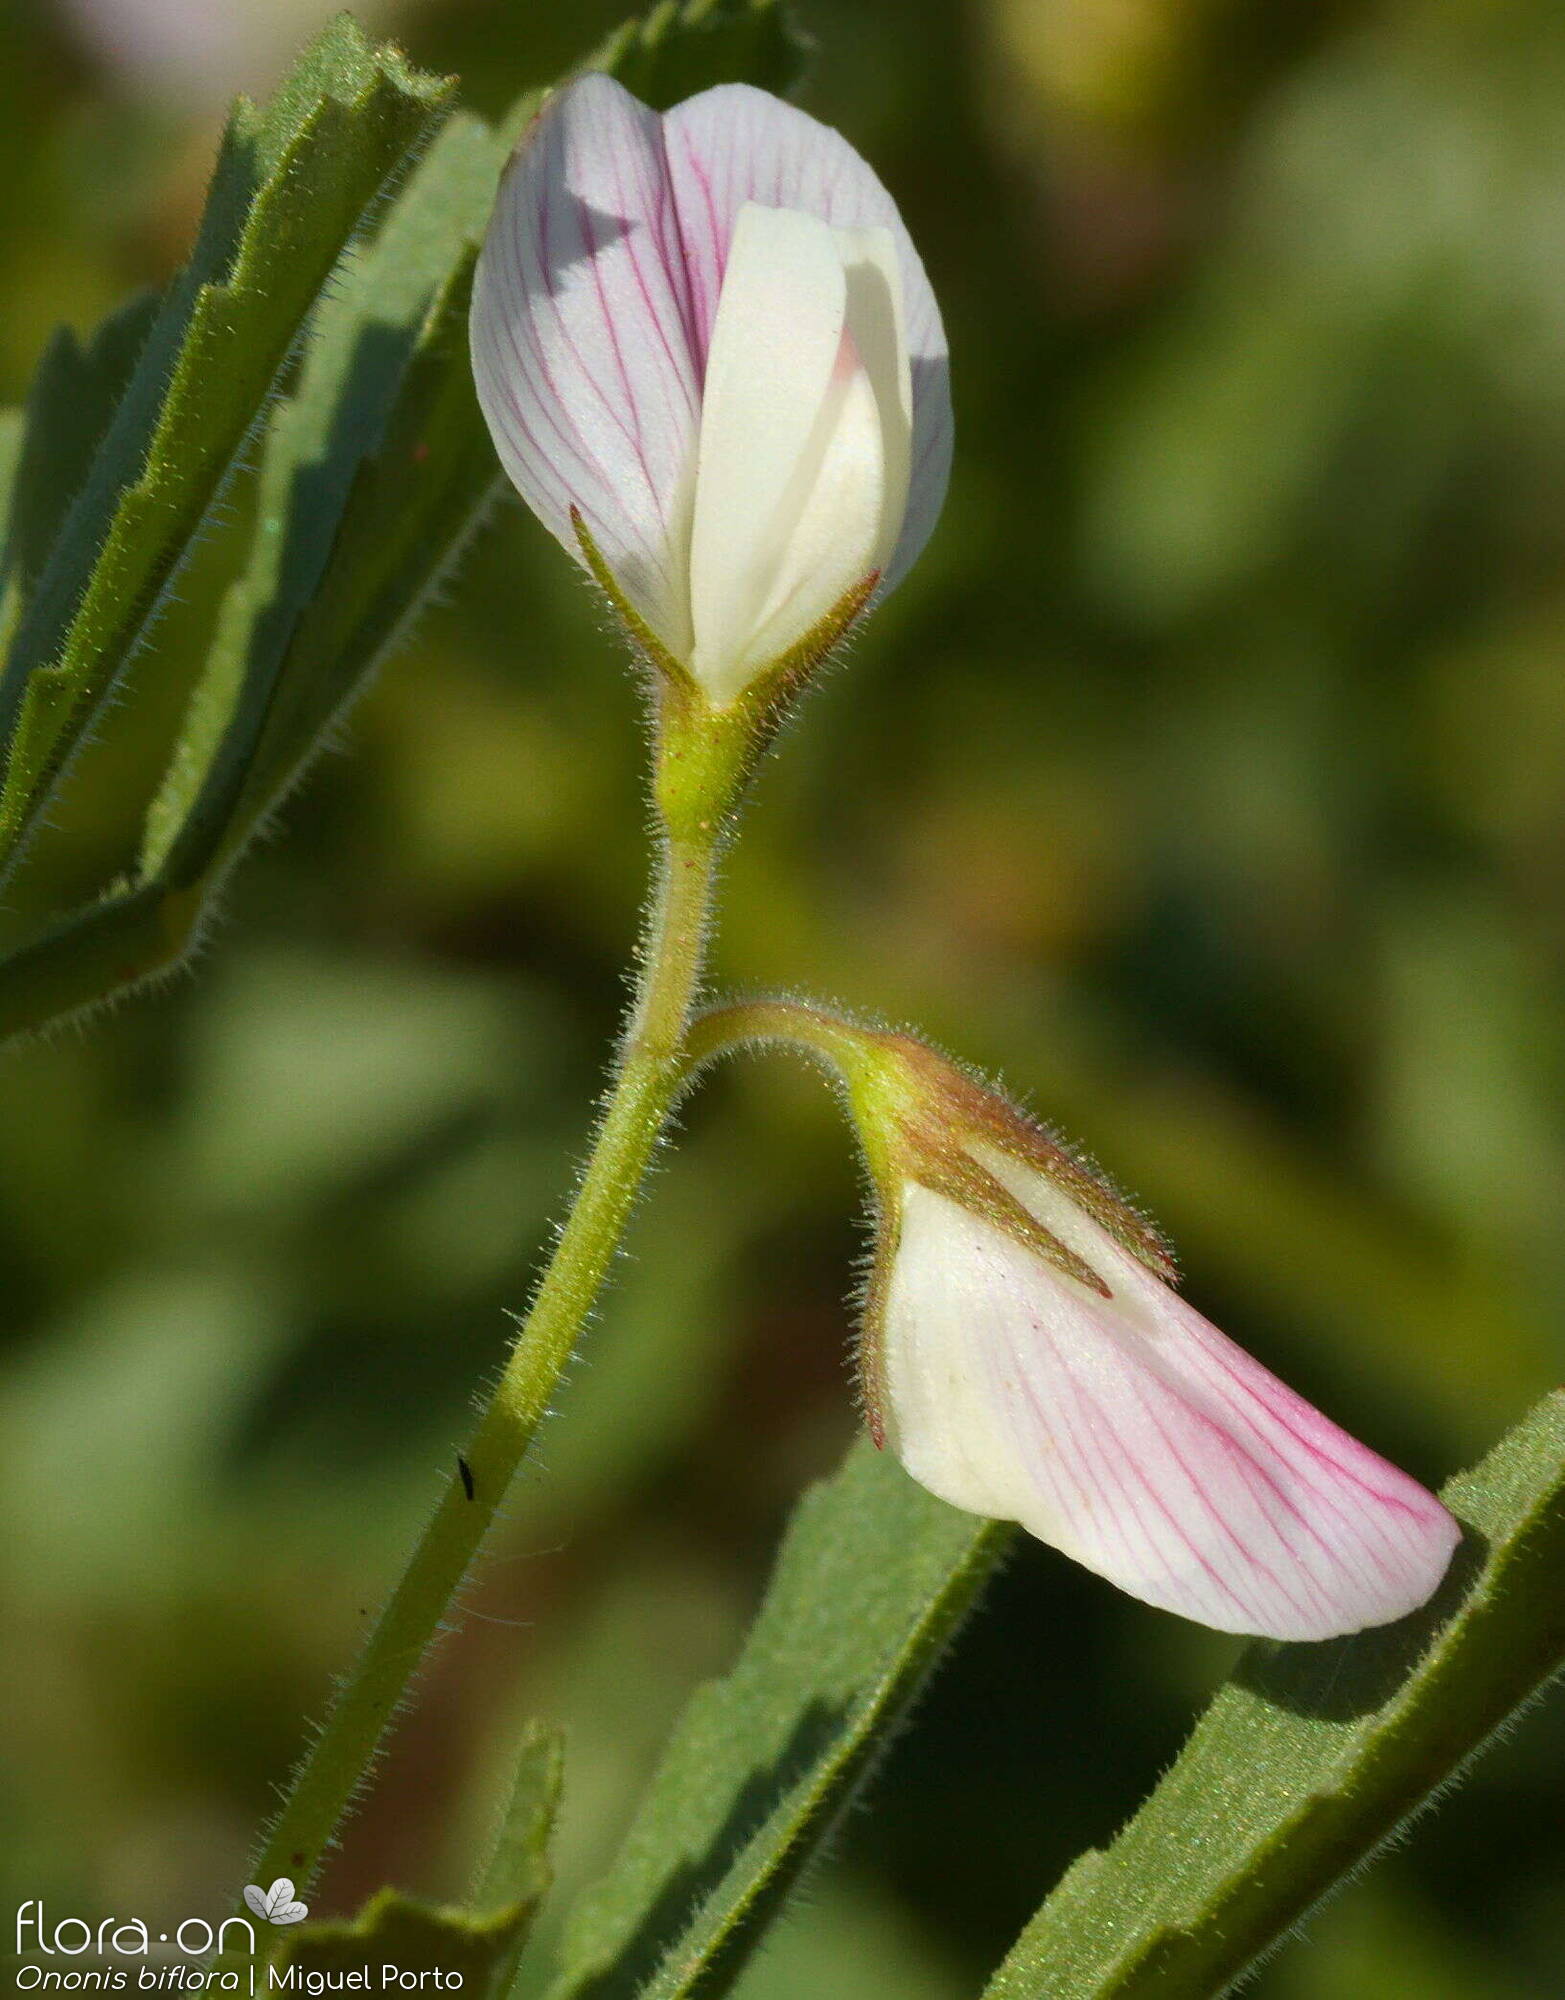 Ononis biflora - Flor (close-up) | Miguel Porto; CC BY-NC 4.0